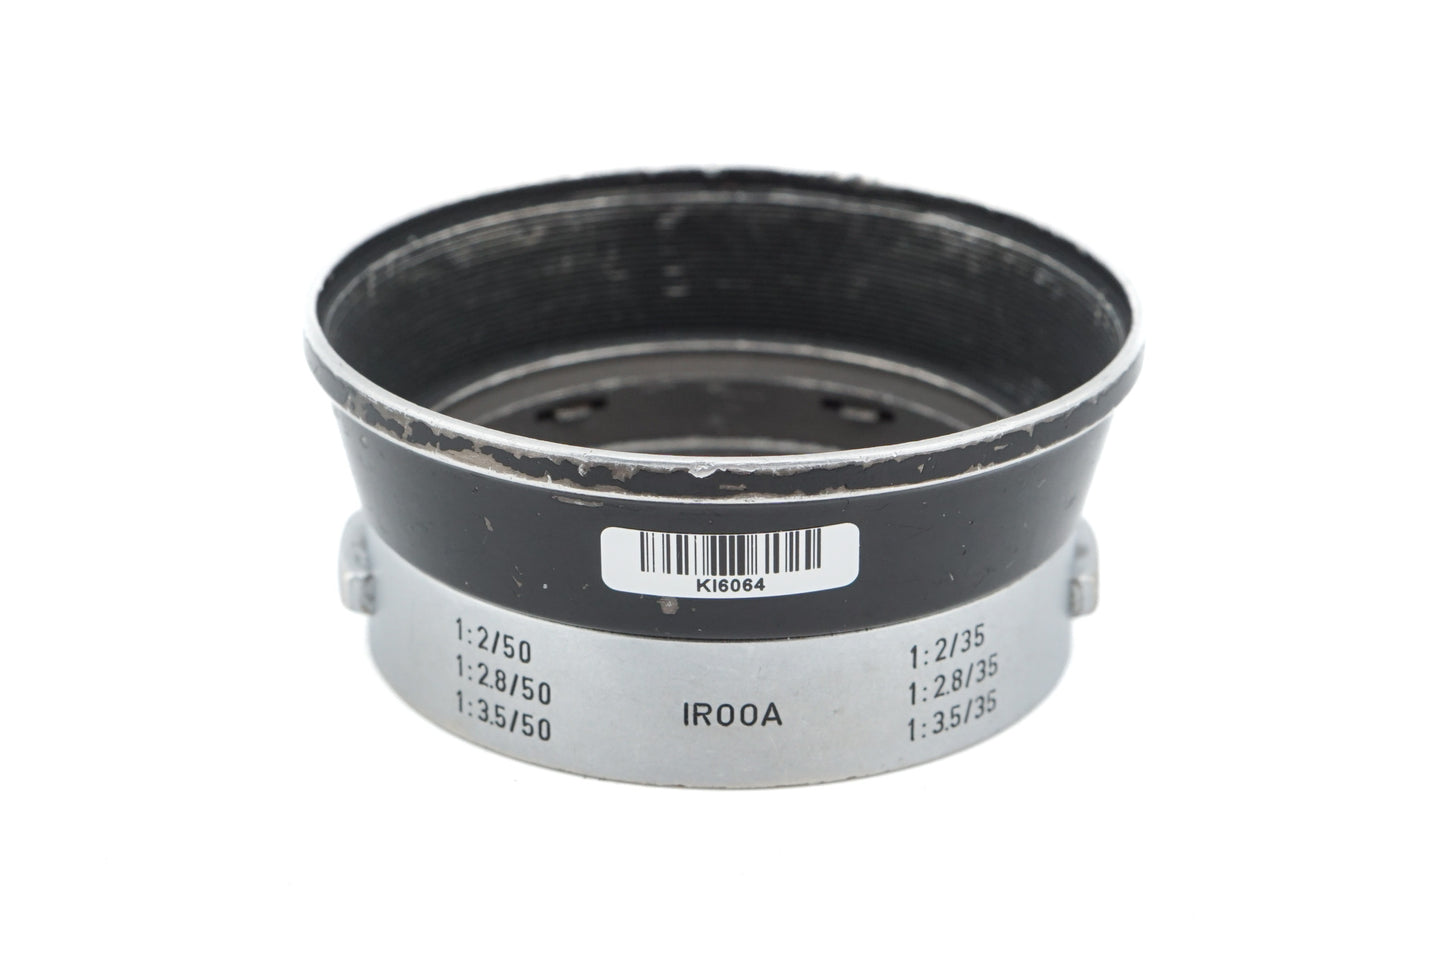 Leica Lens Hood (IROOA / 12571)